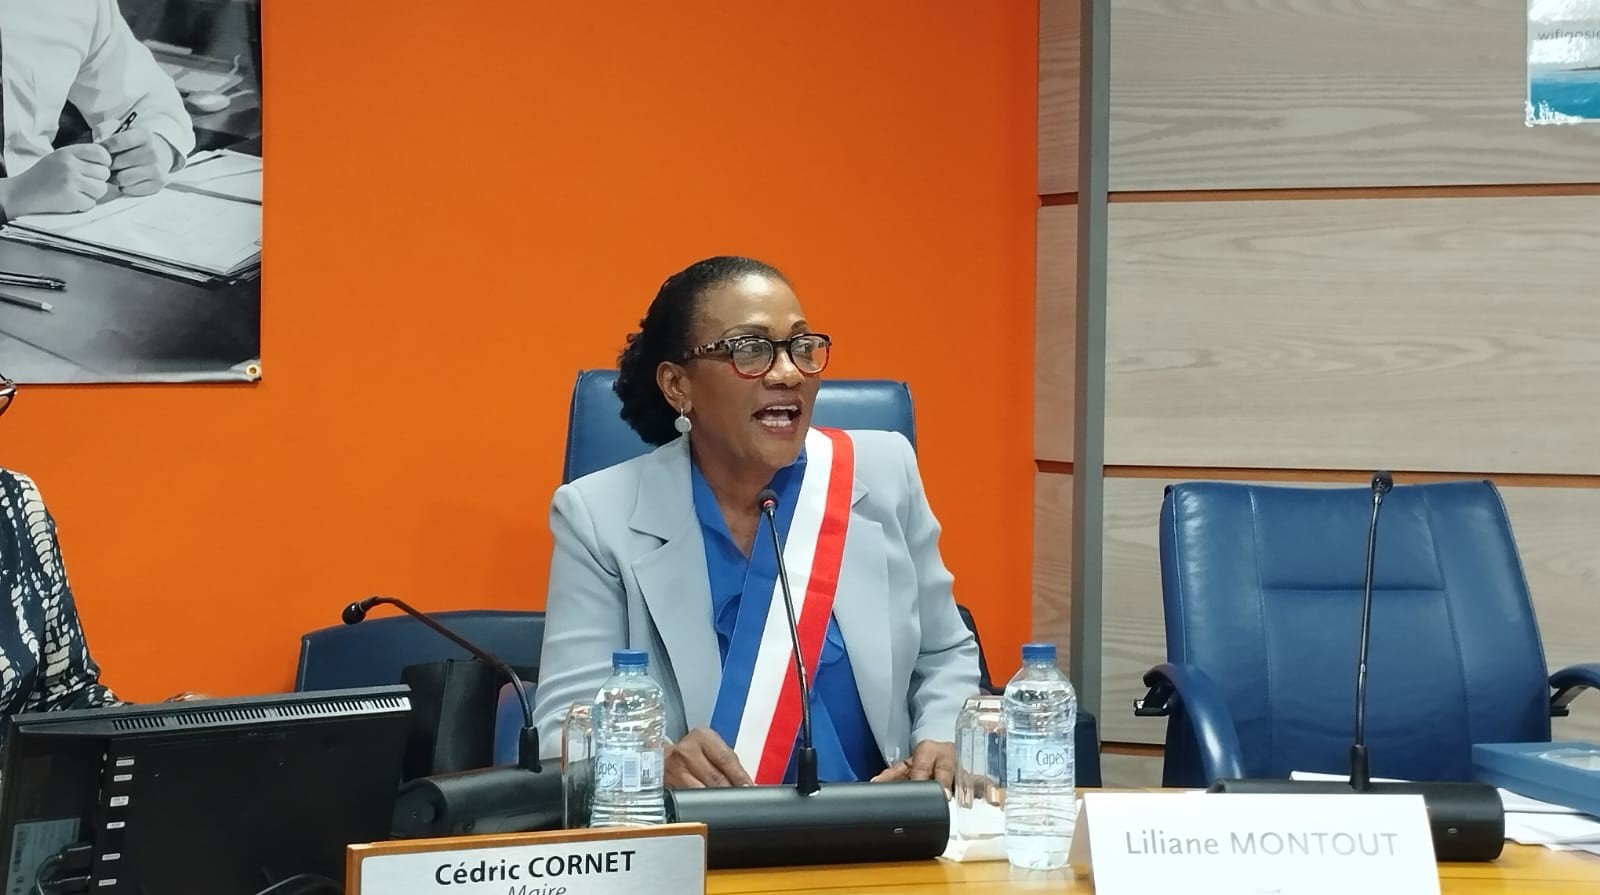     Le nouveau maire du Gosier, Liliane Montout, veut apaiser les tensions

